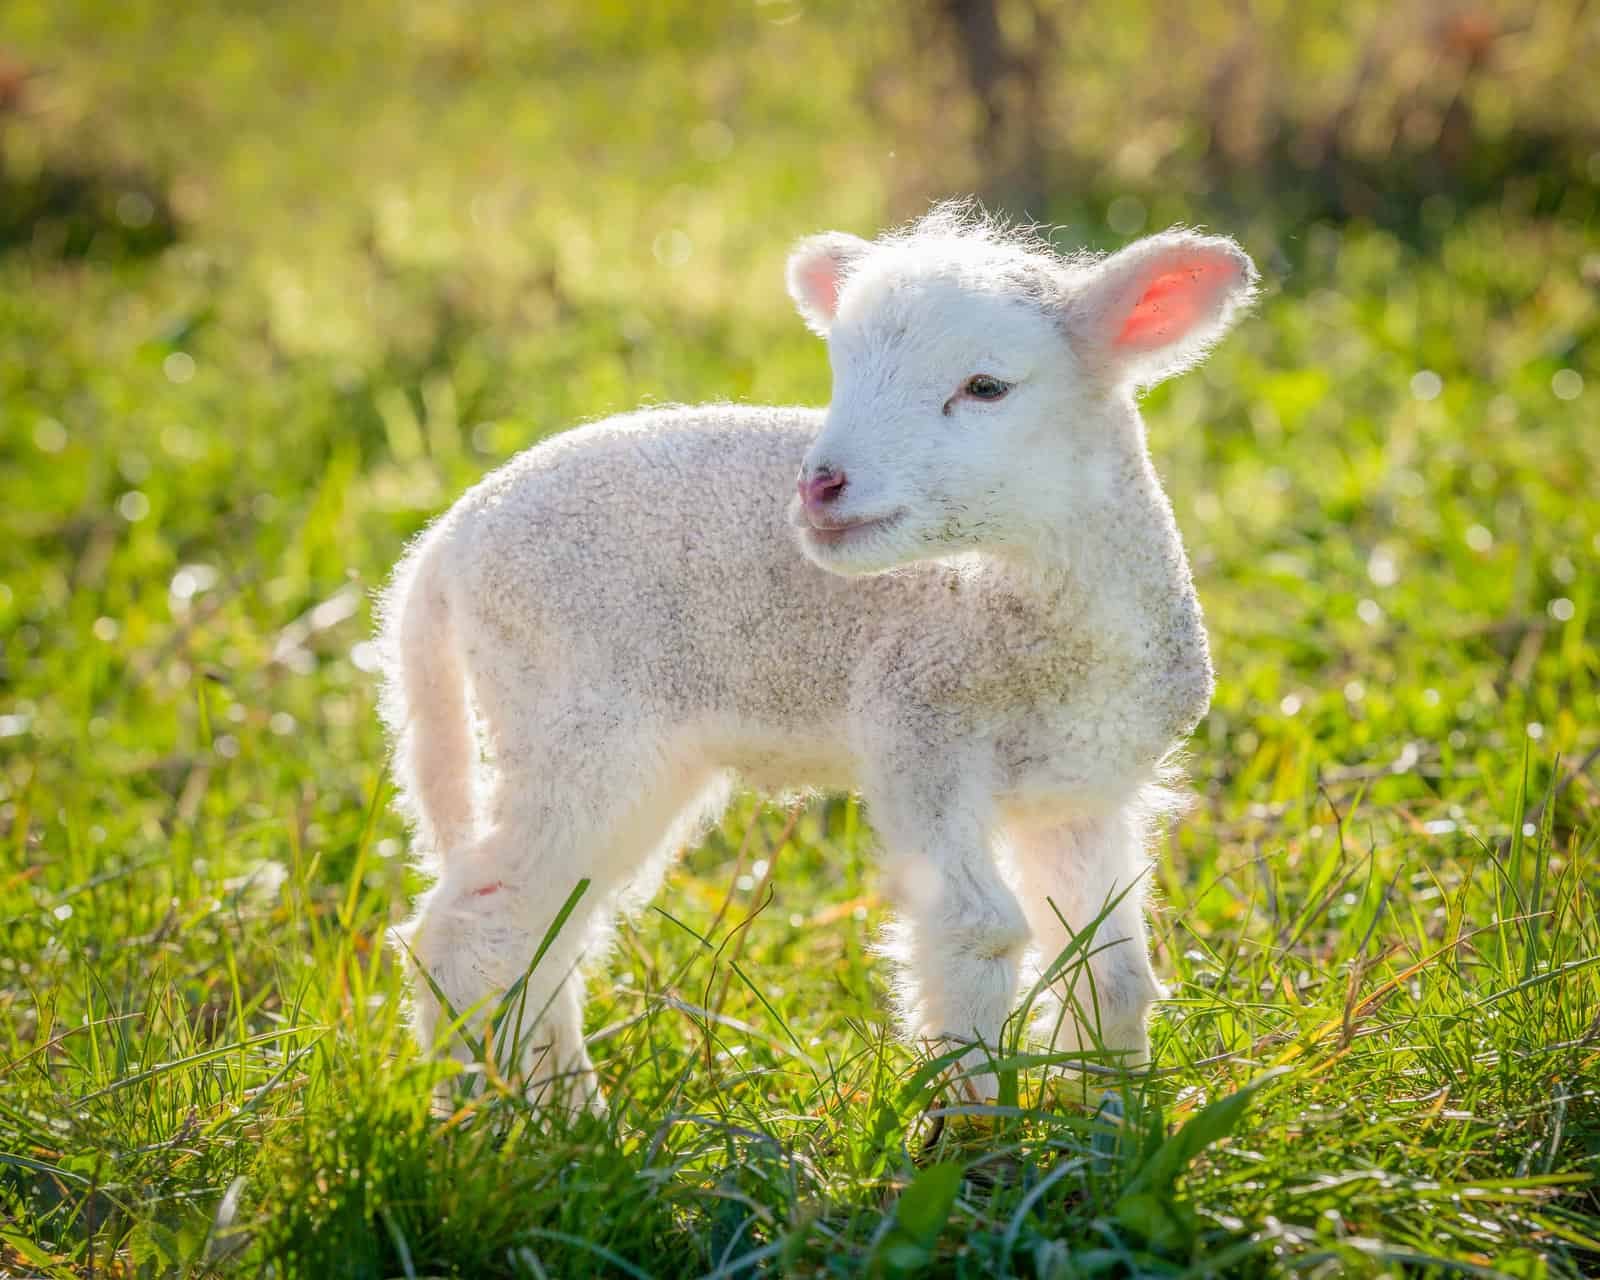 Baby Lamb in a Field